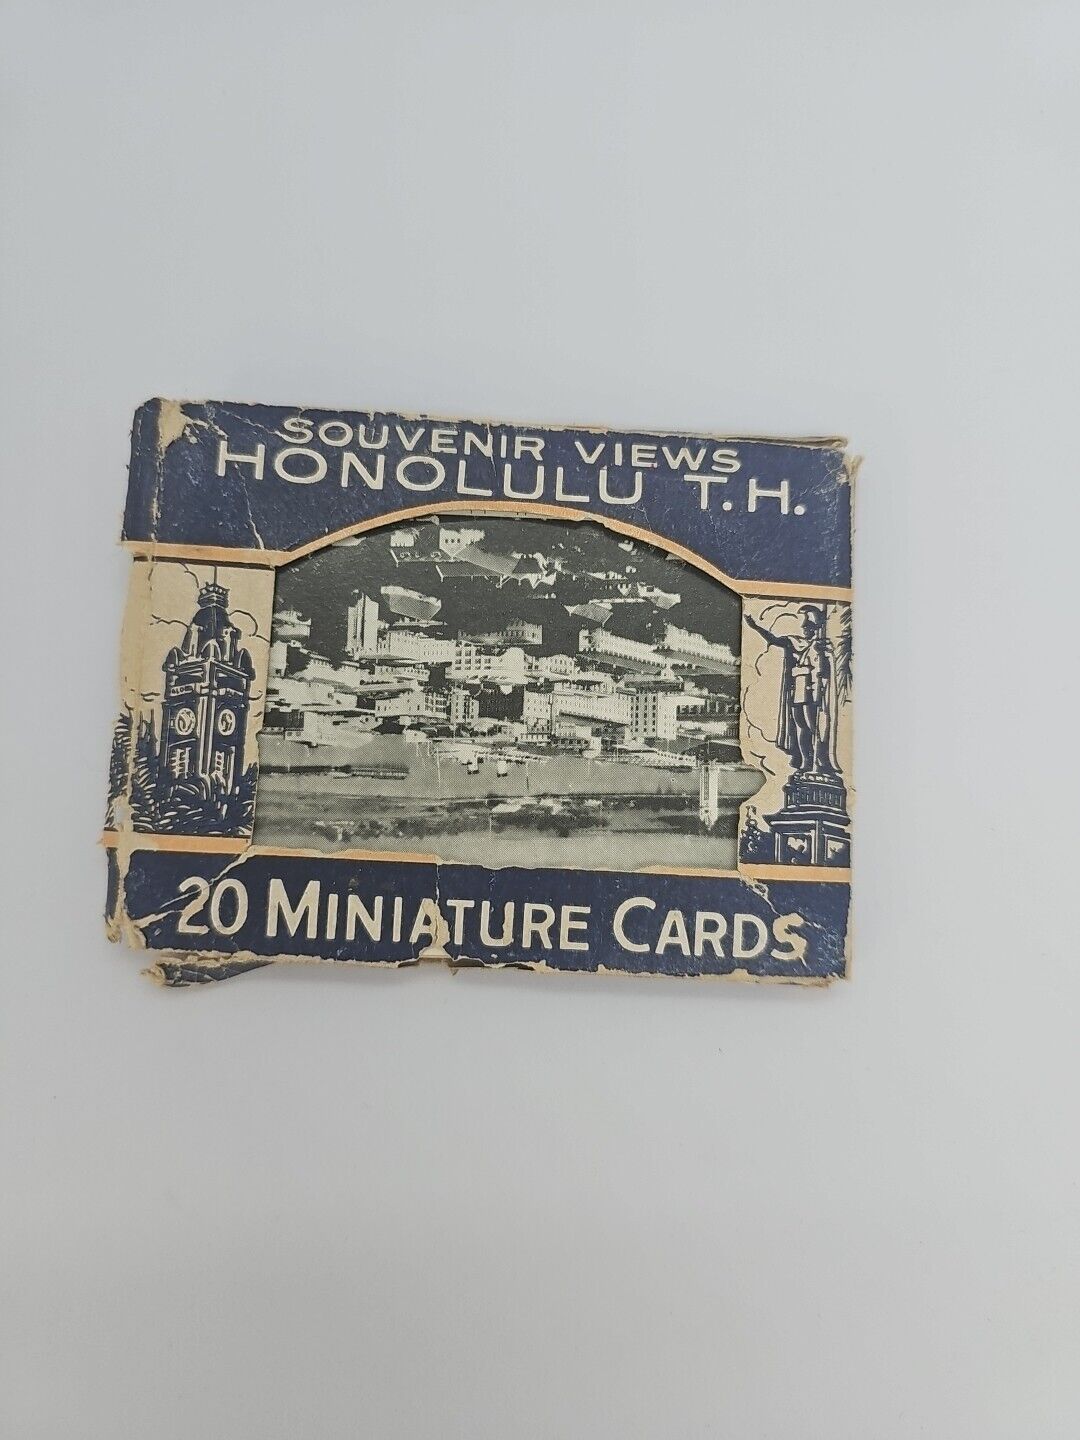 Vtg Souvenir Views of Honolulu, T. H. Vintage T.H (19 Miniature Cards)